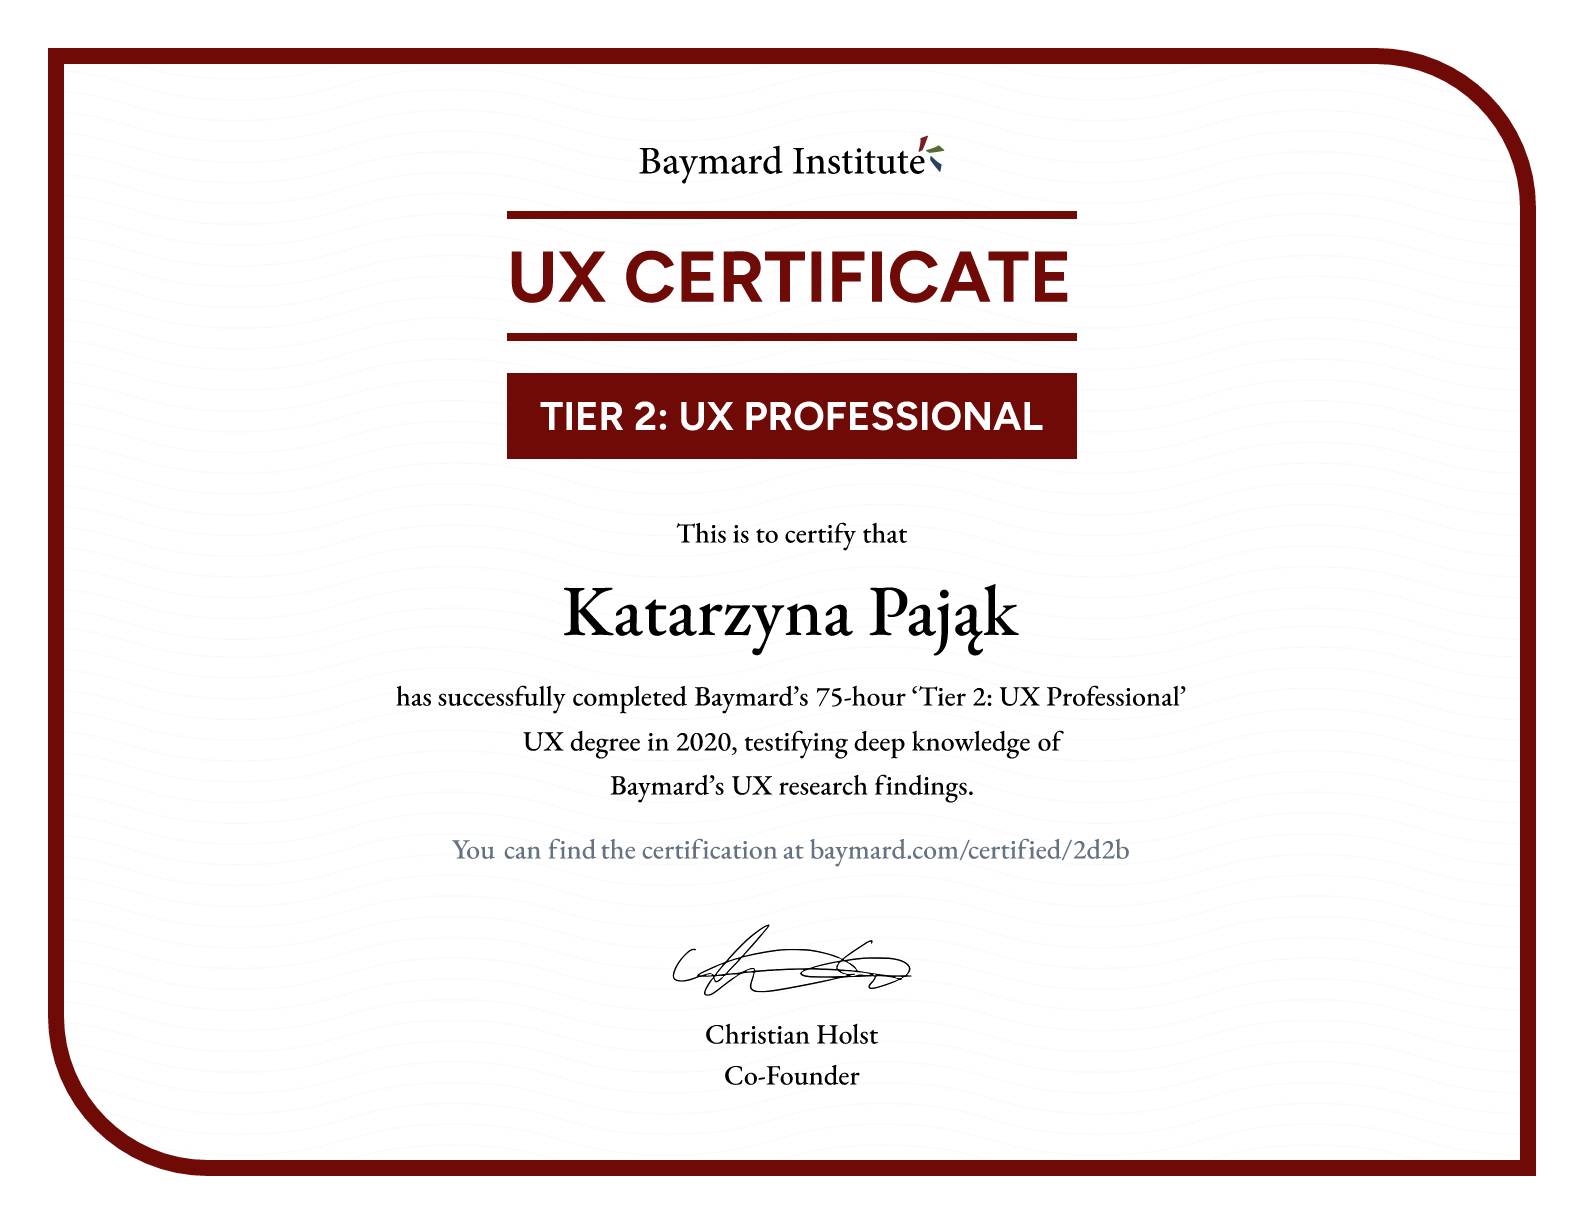 Katarzyna Pająk’s certificate